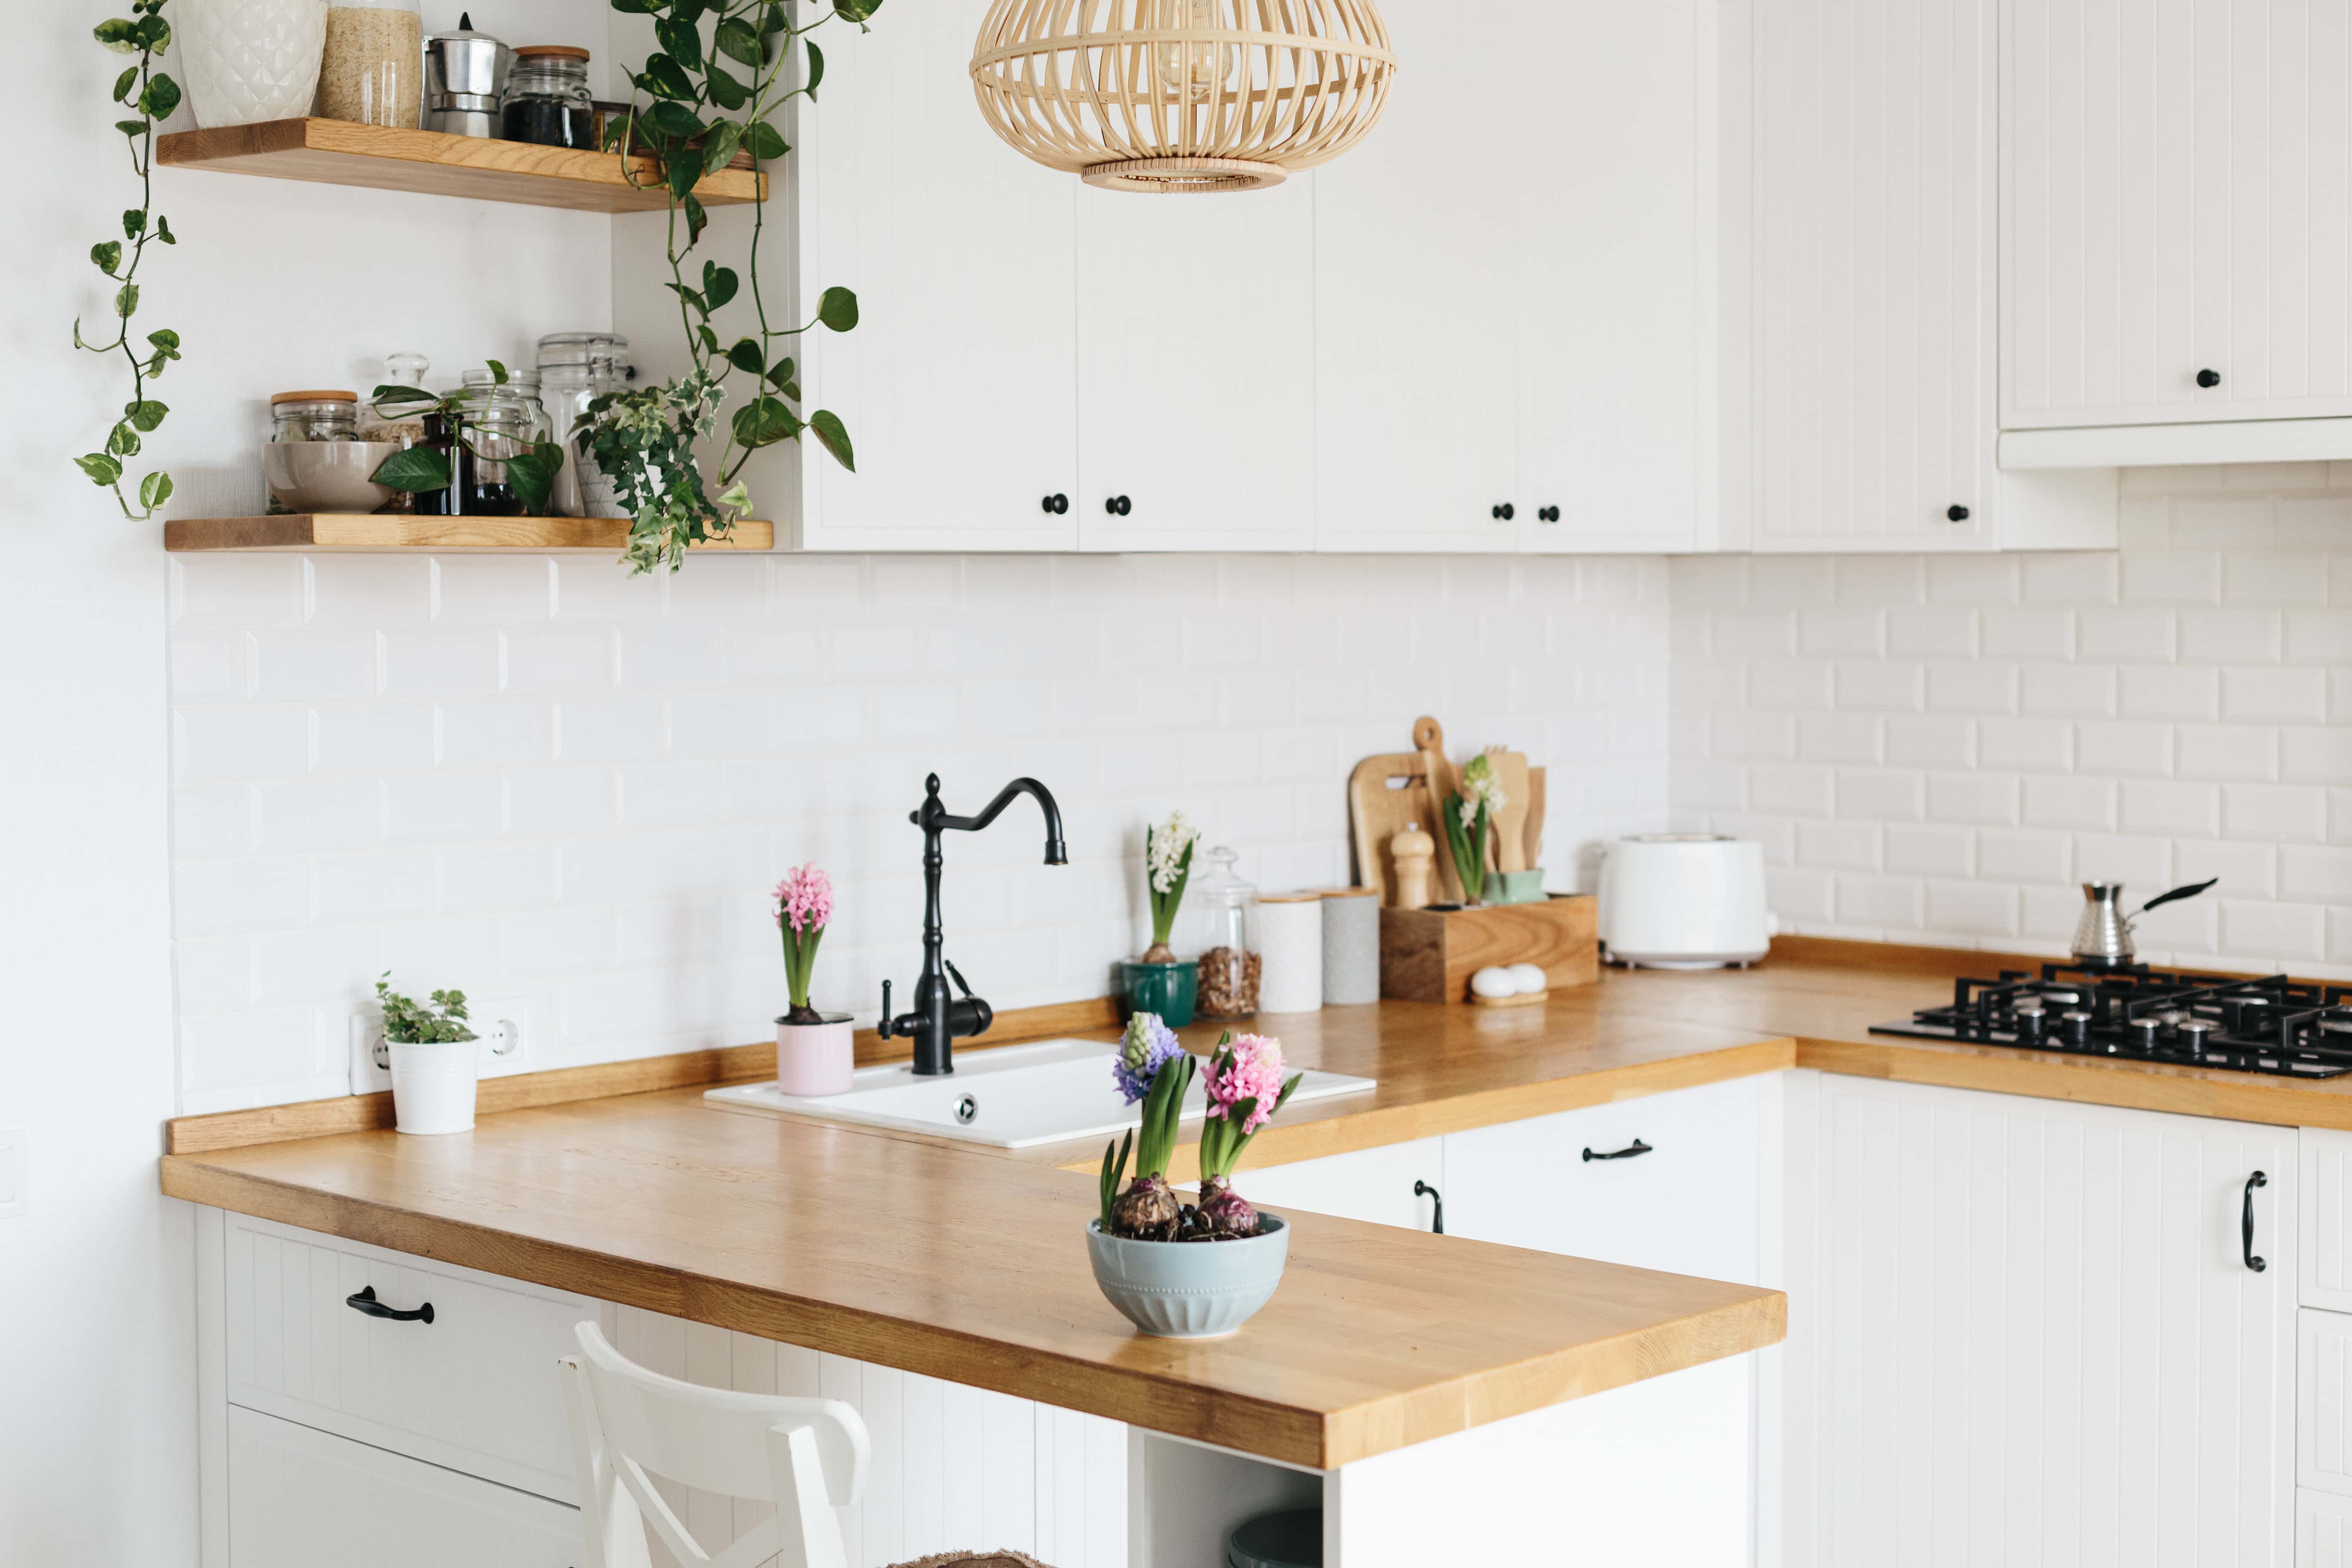 U Shaped Kitchen Layout   HomeLane Blog